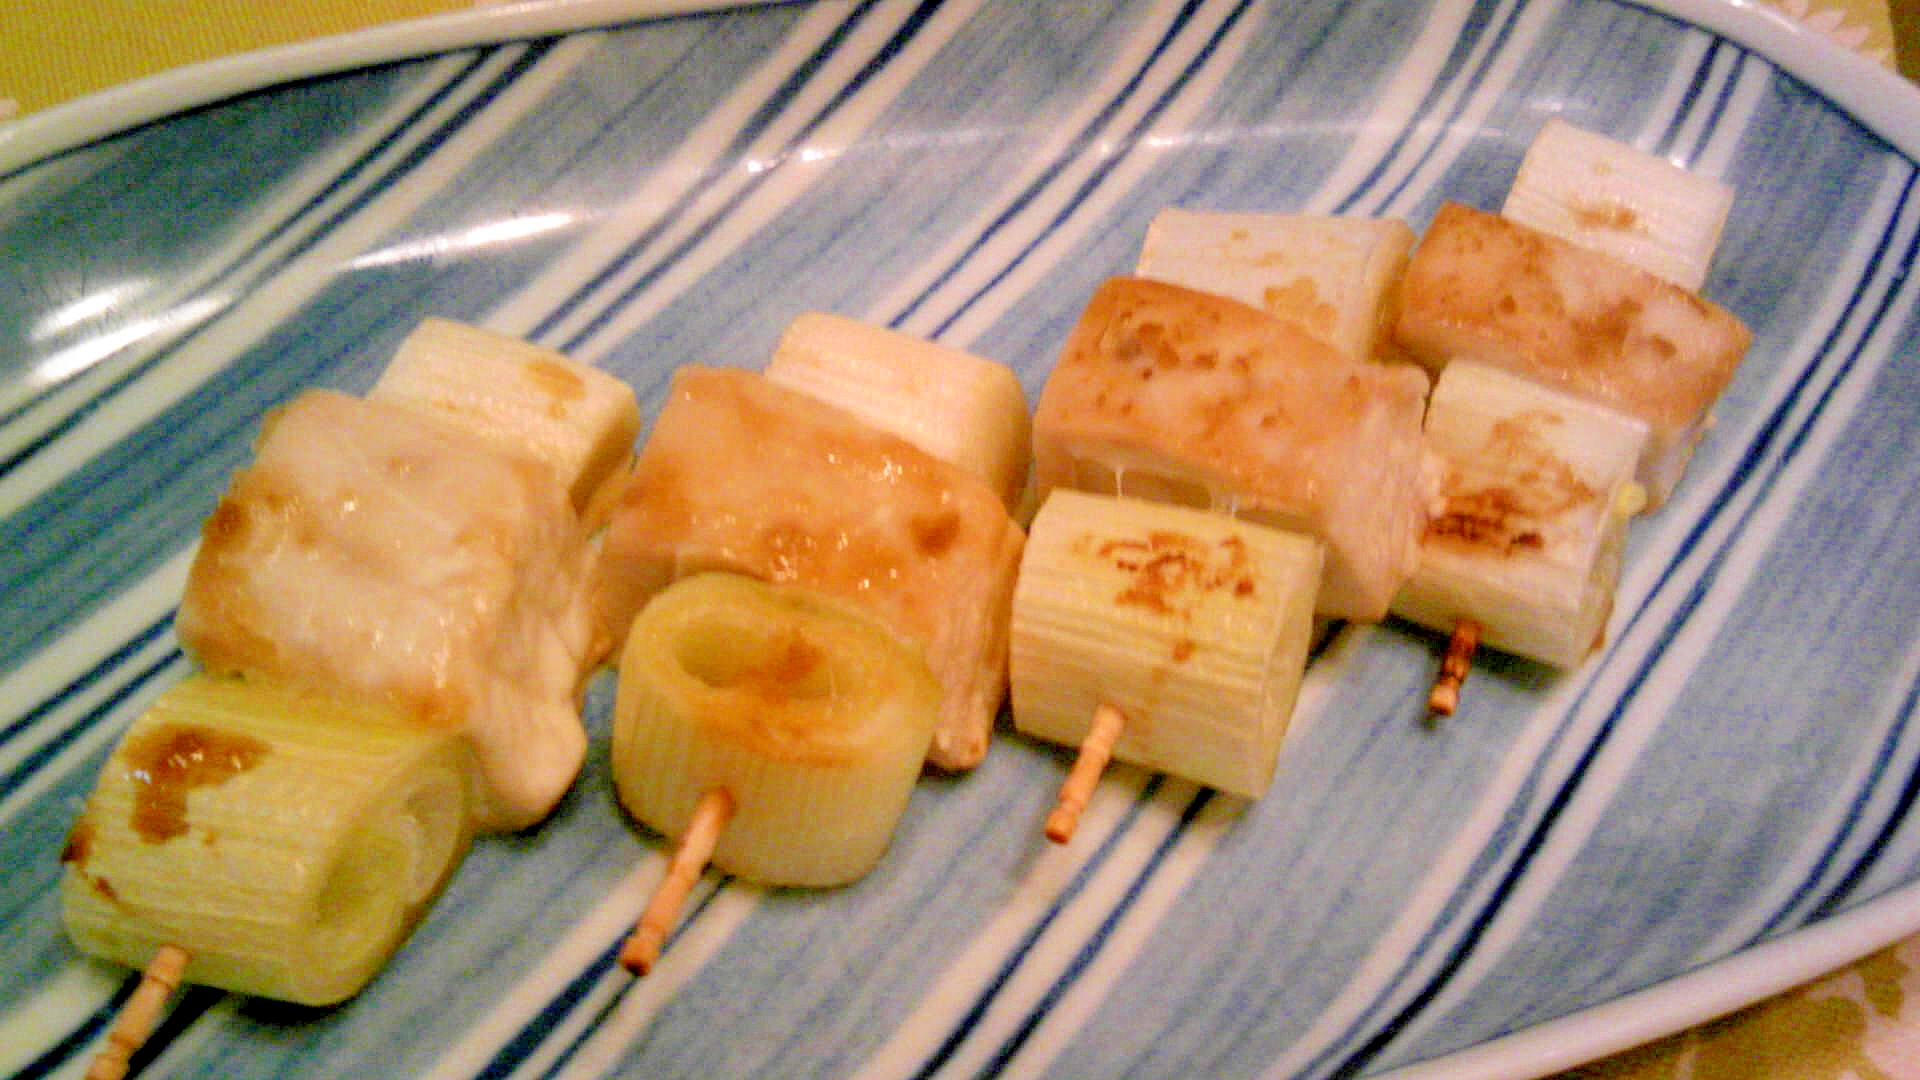 びんちょう鮪と葱の串焼き、生七味唐辛子